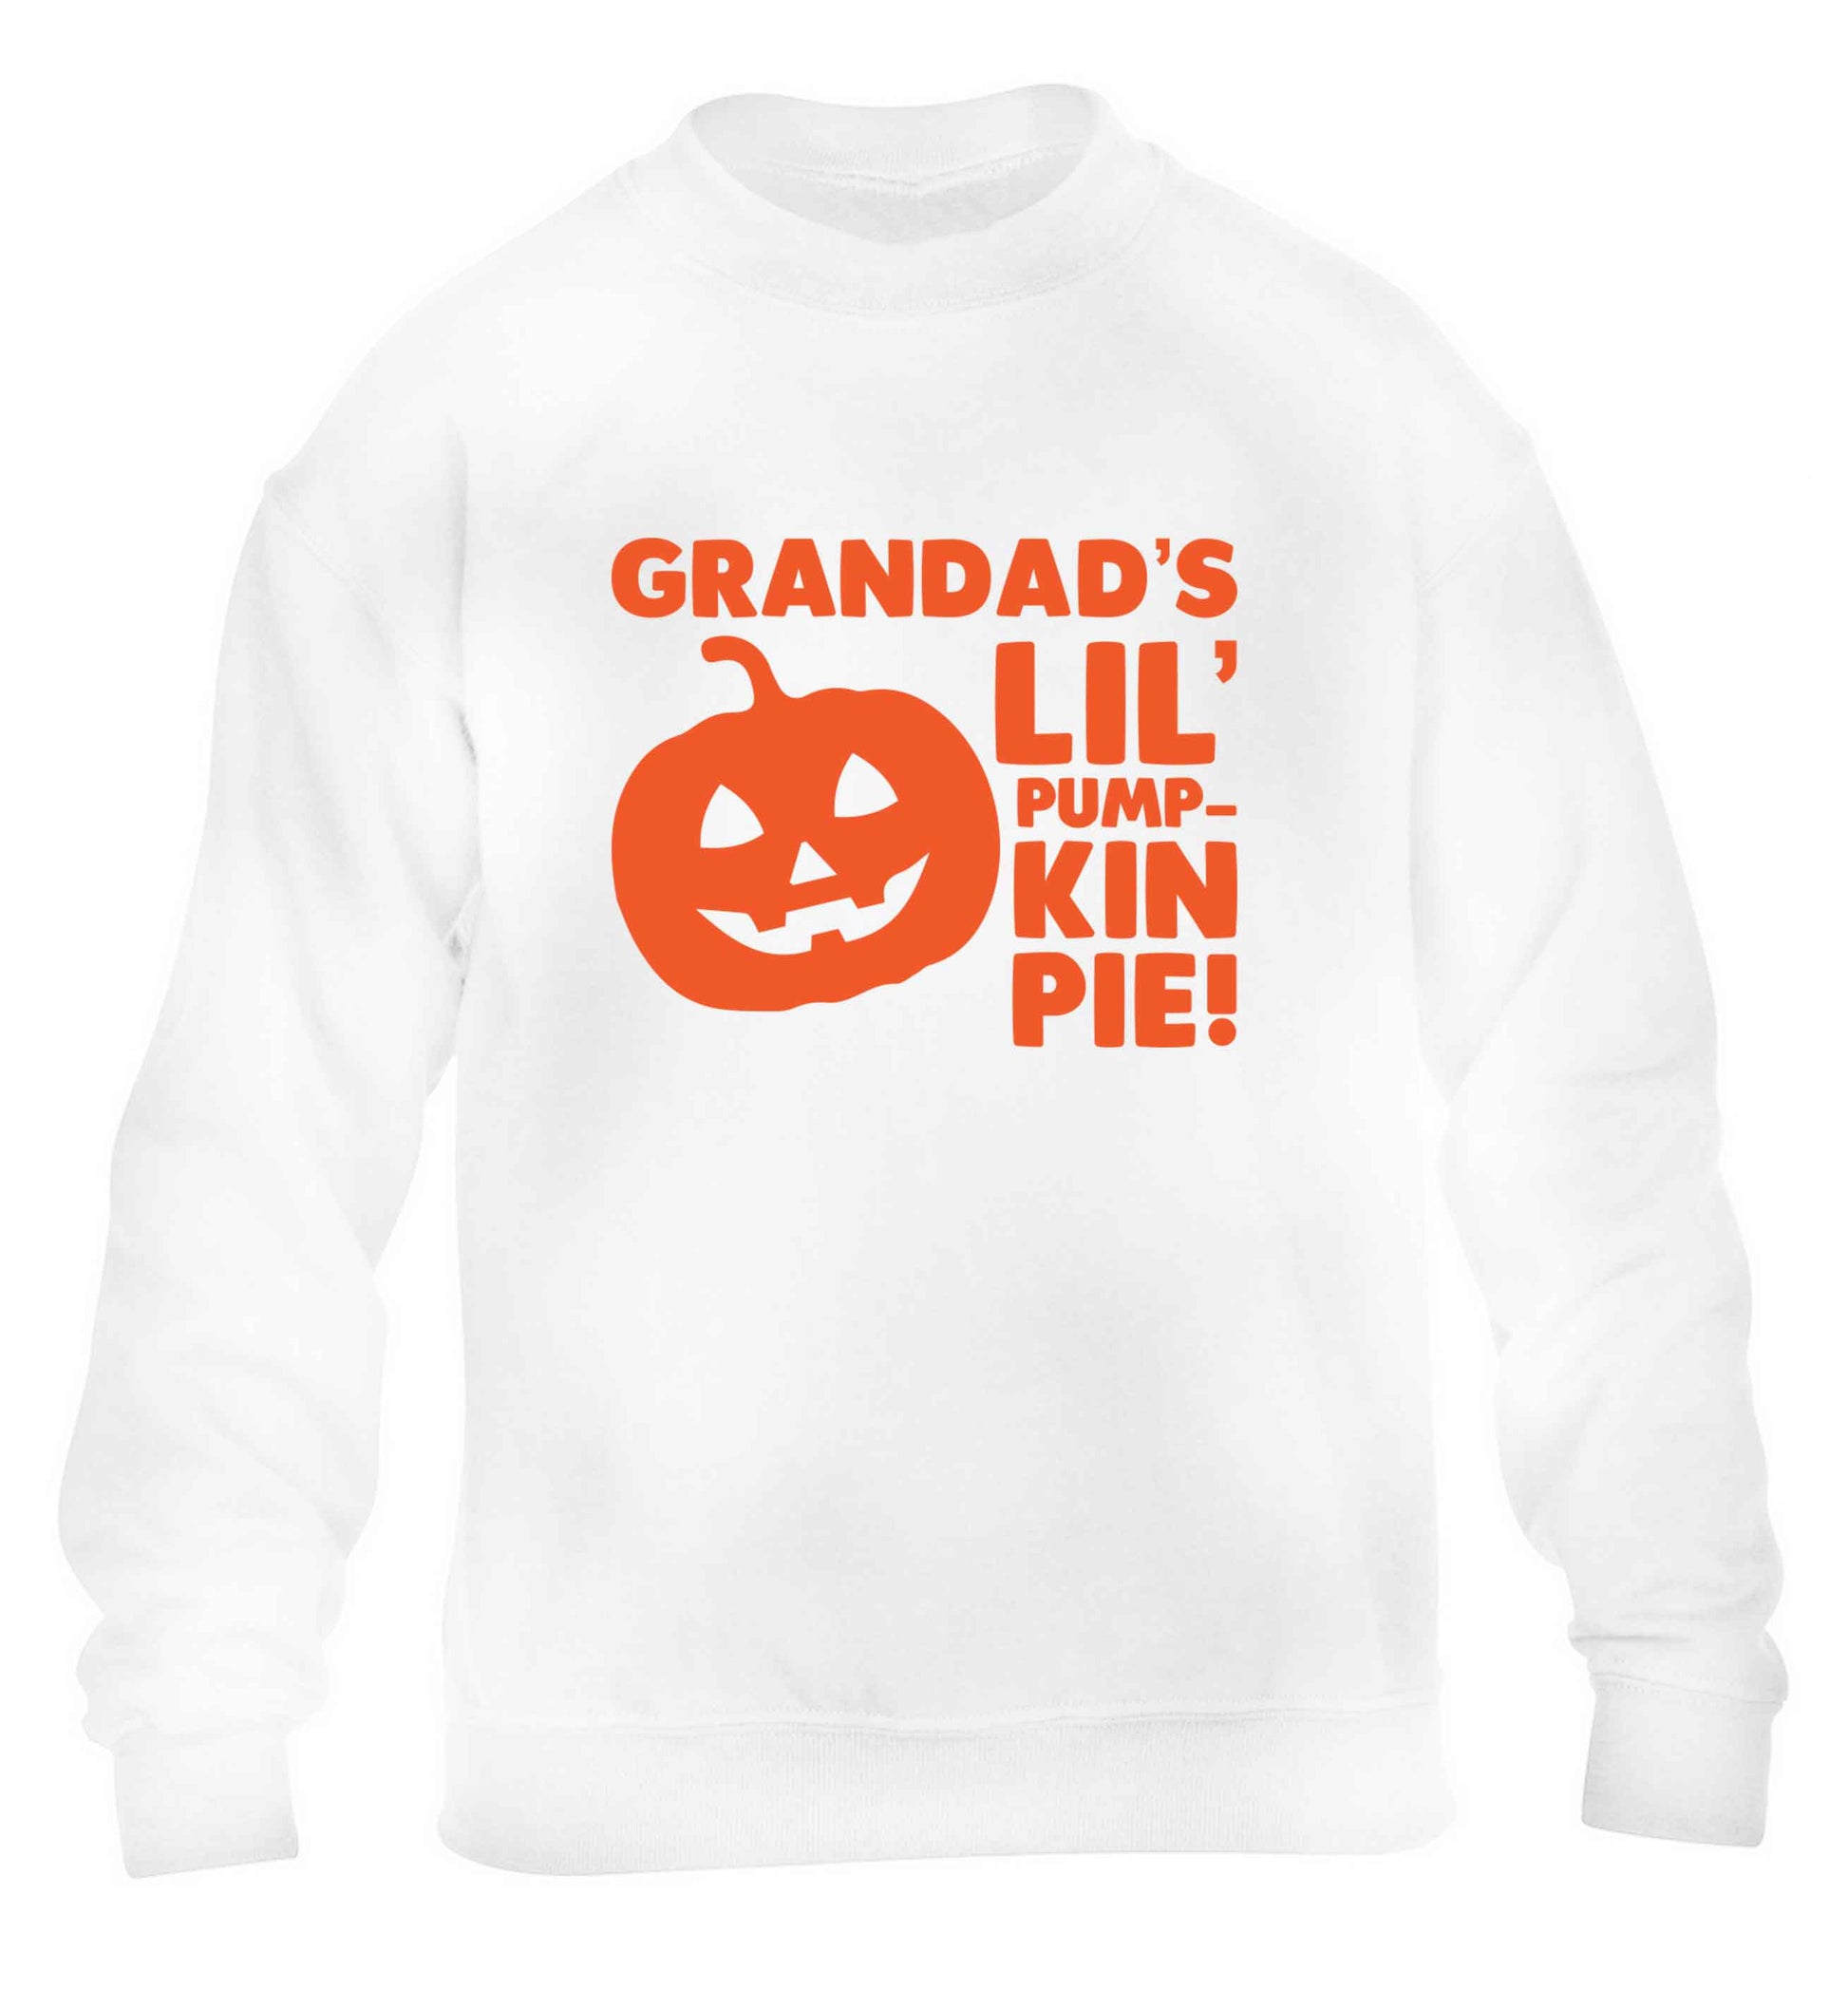 Grandad's lil' pumpkin pie children's white sweater 12-13 Years